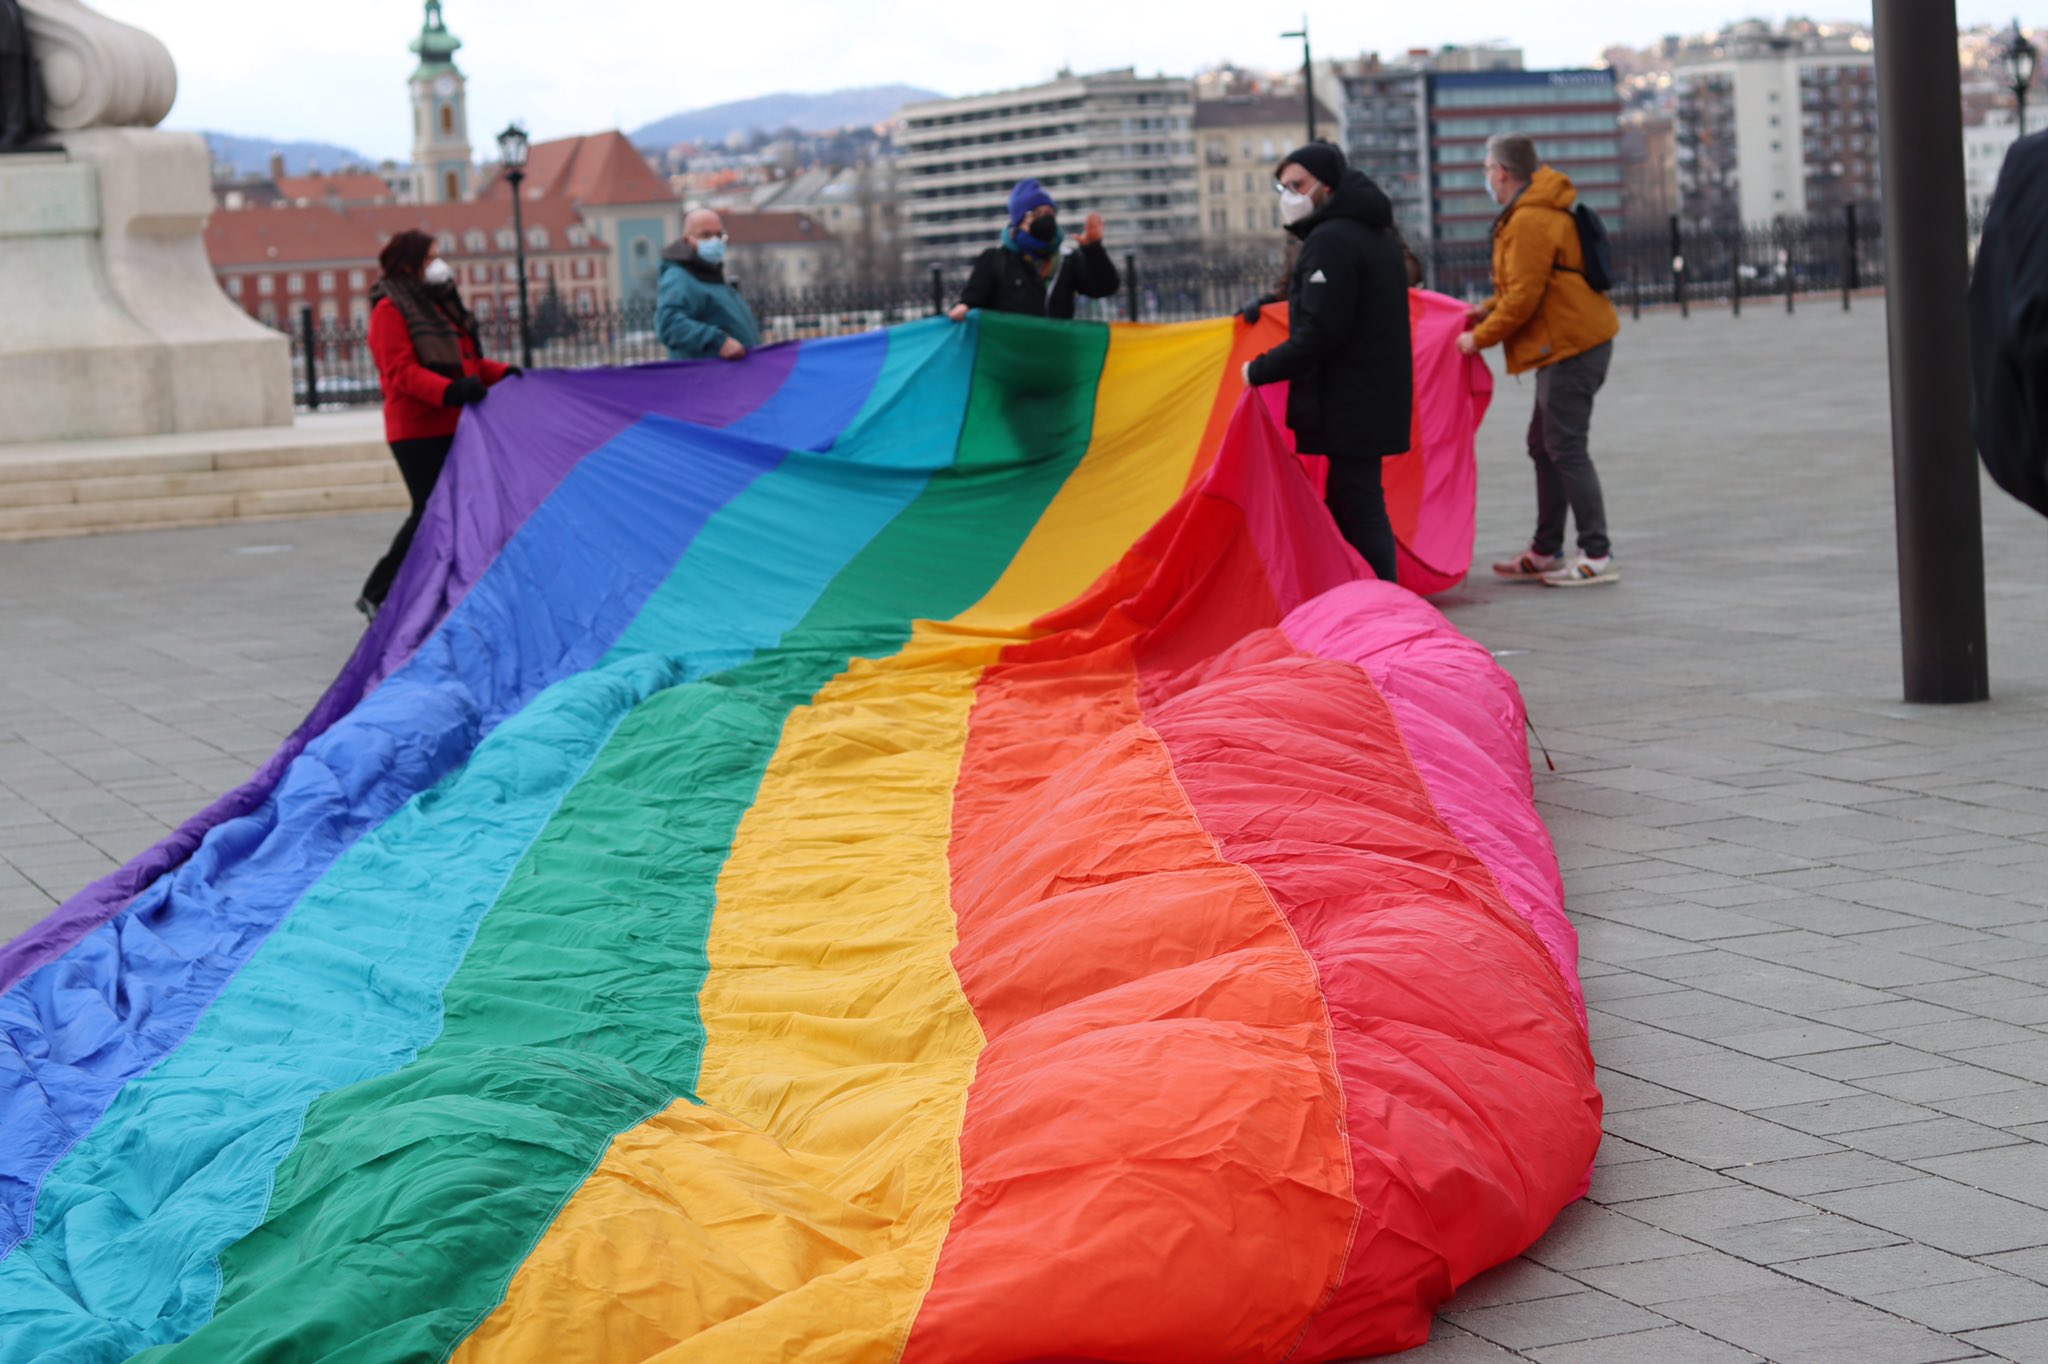 Macaristan, Avrupa Birliği Adalet Divanı’nda da insan haklarını çiğnemekte ısrarcı | Kaos GL - LGBTİ+ Haber Portalı